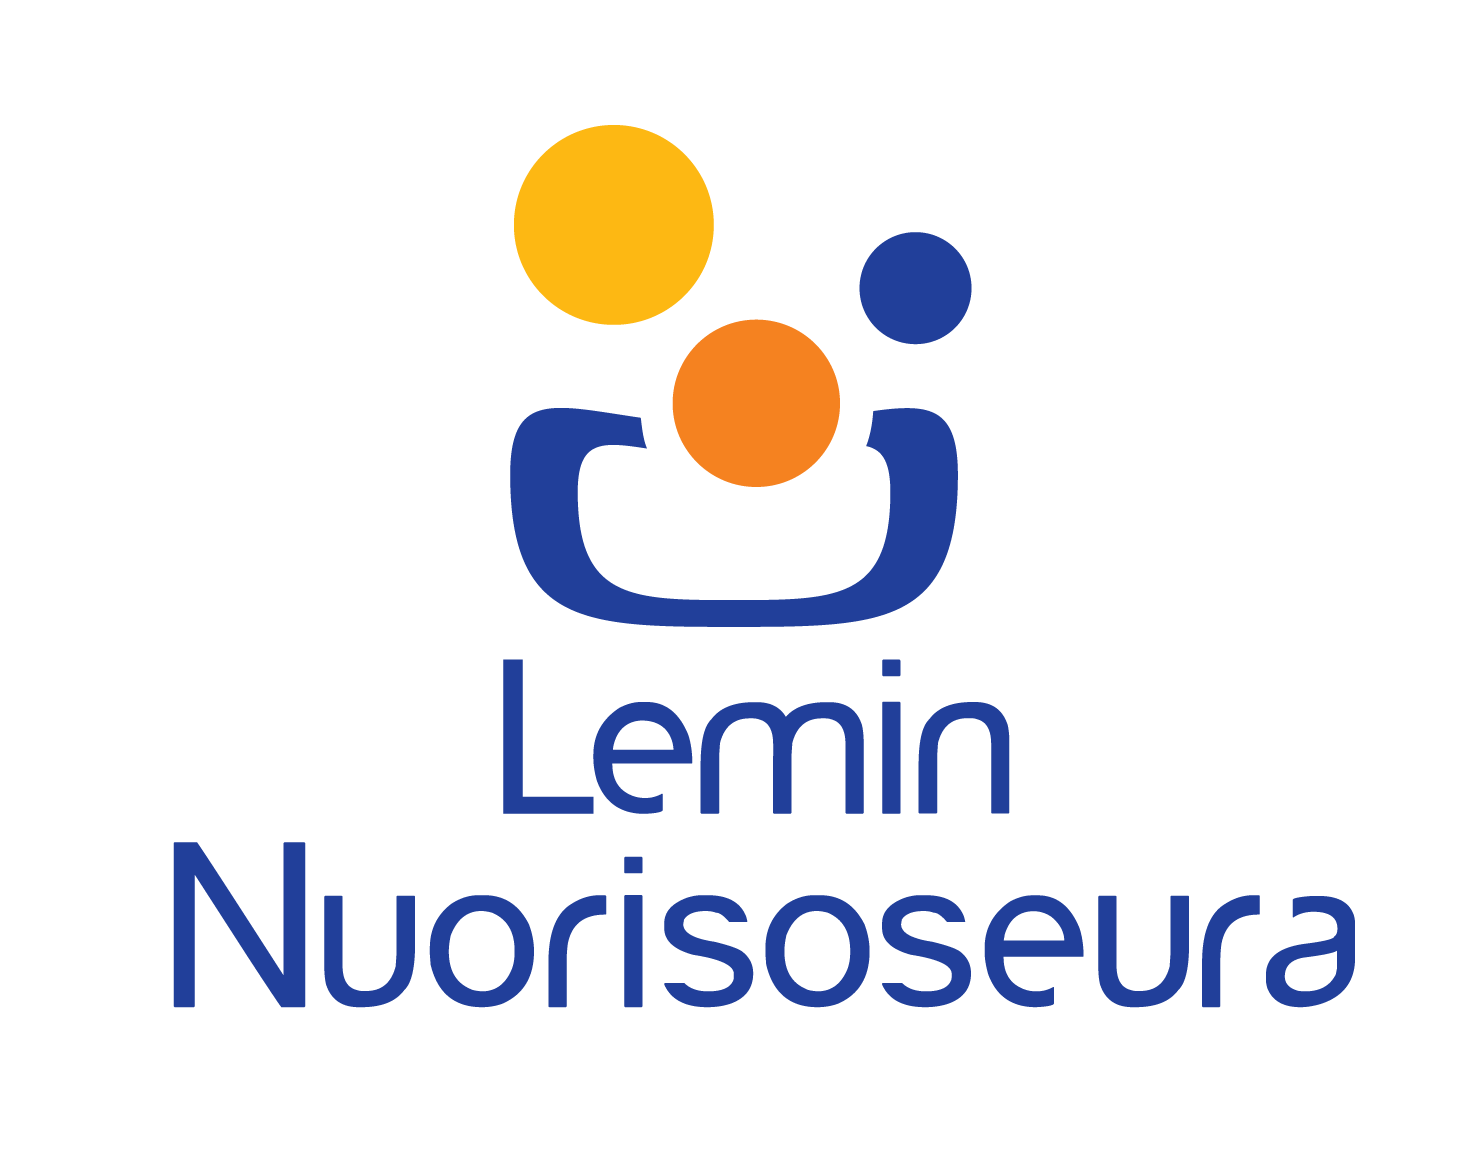 Lemin Nuorisoseuran logo